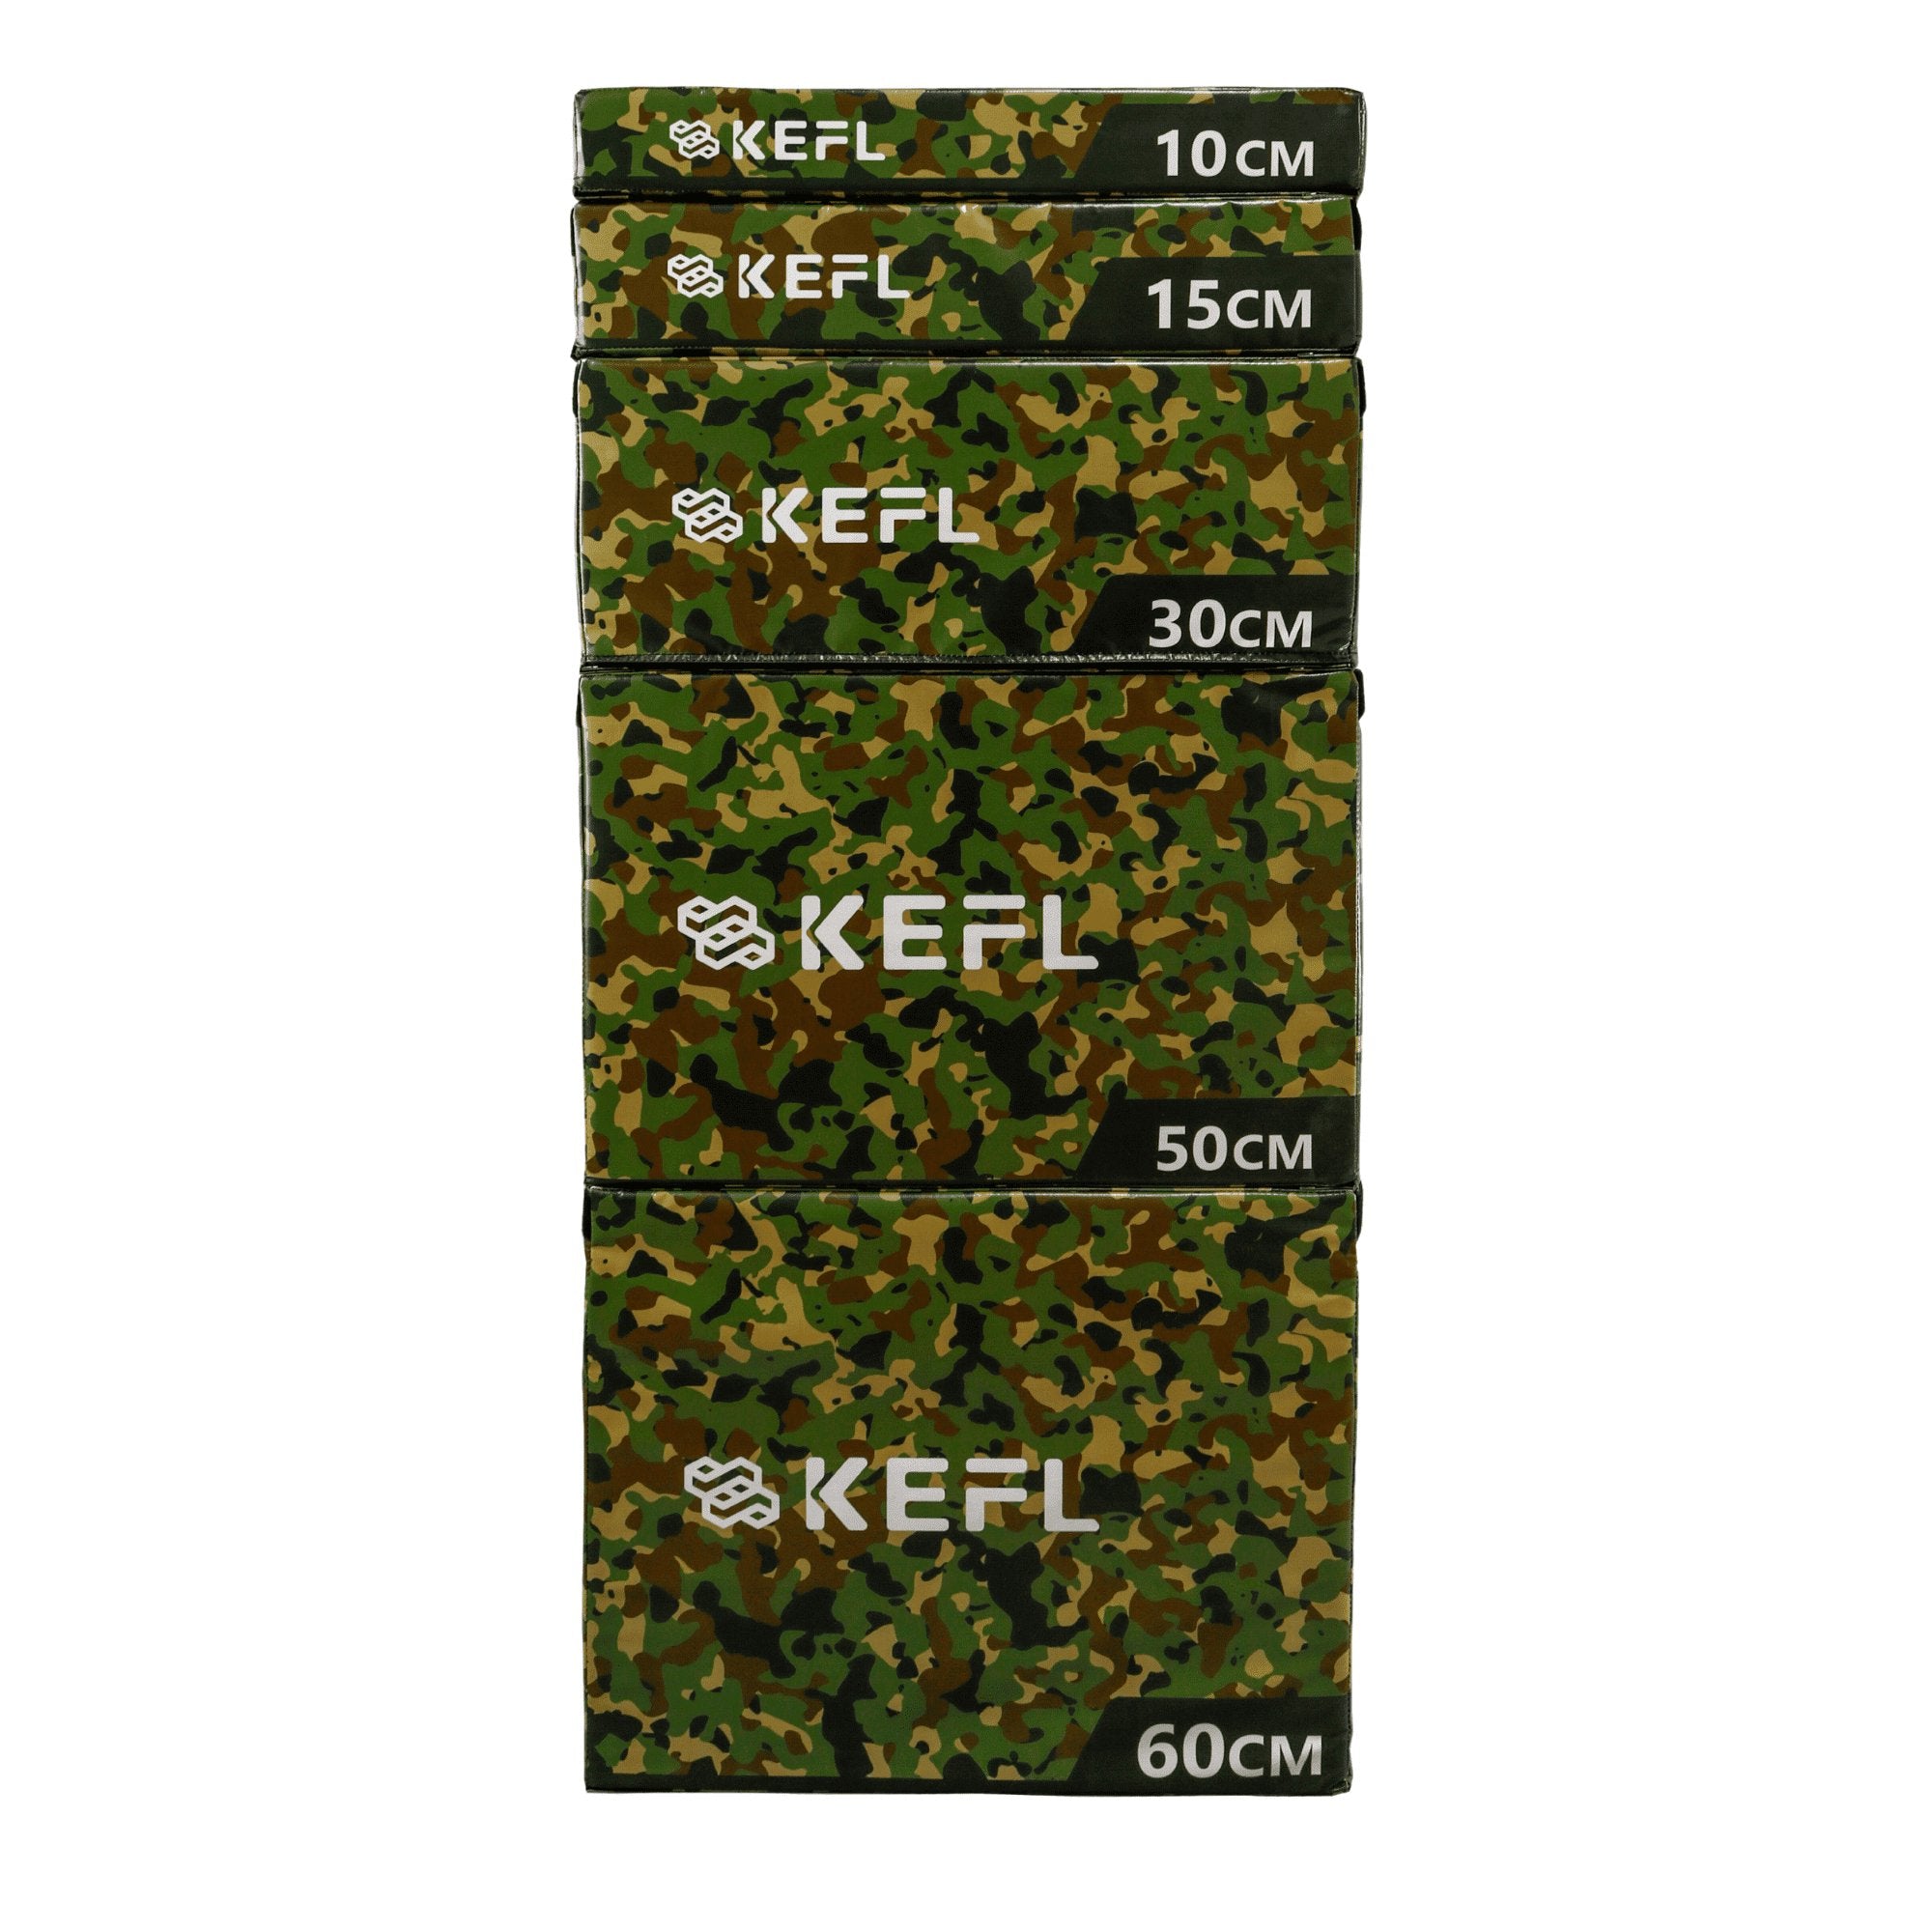 KEFL Soft Foam Plyometric Jump Box - Green Camo - KEFLUK